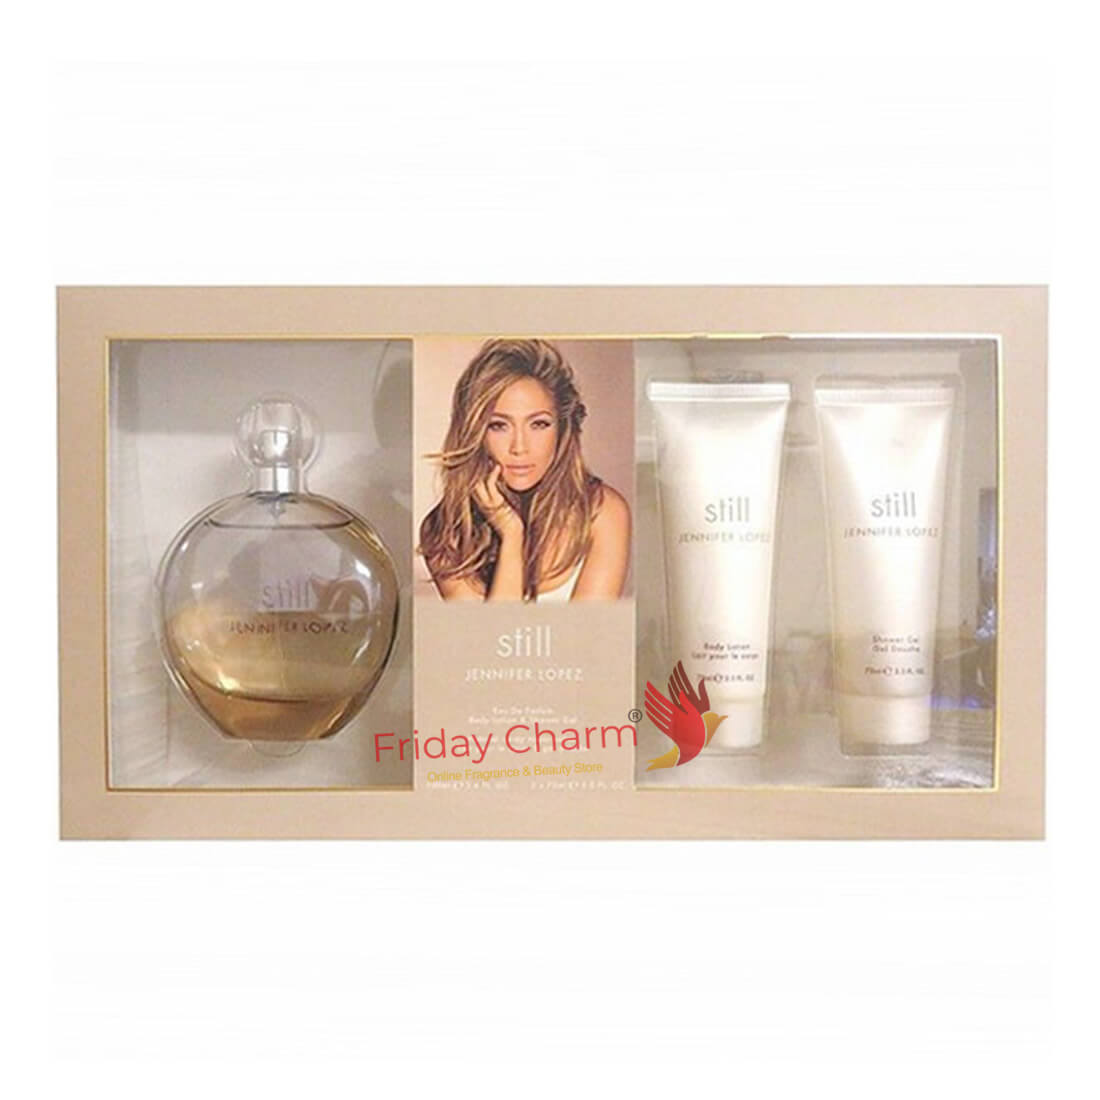 Jennifer Lopez Still Perfume Gift Set For Women Eau De Toilette 100ml + Body Lotion 75ml + Shower Gel 75ml